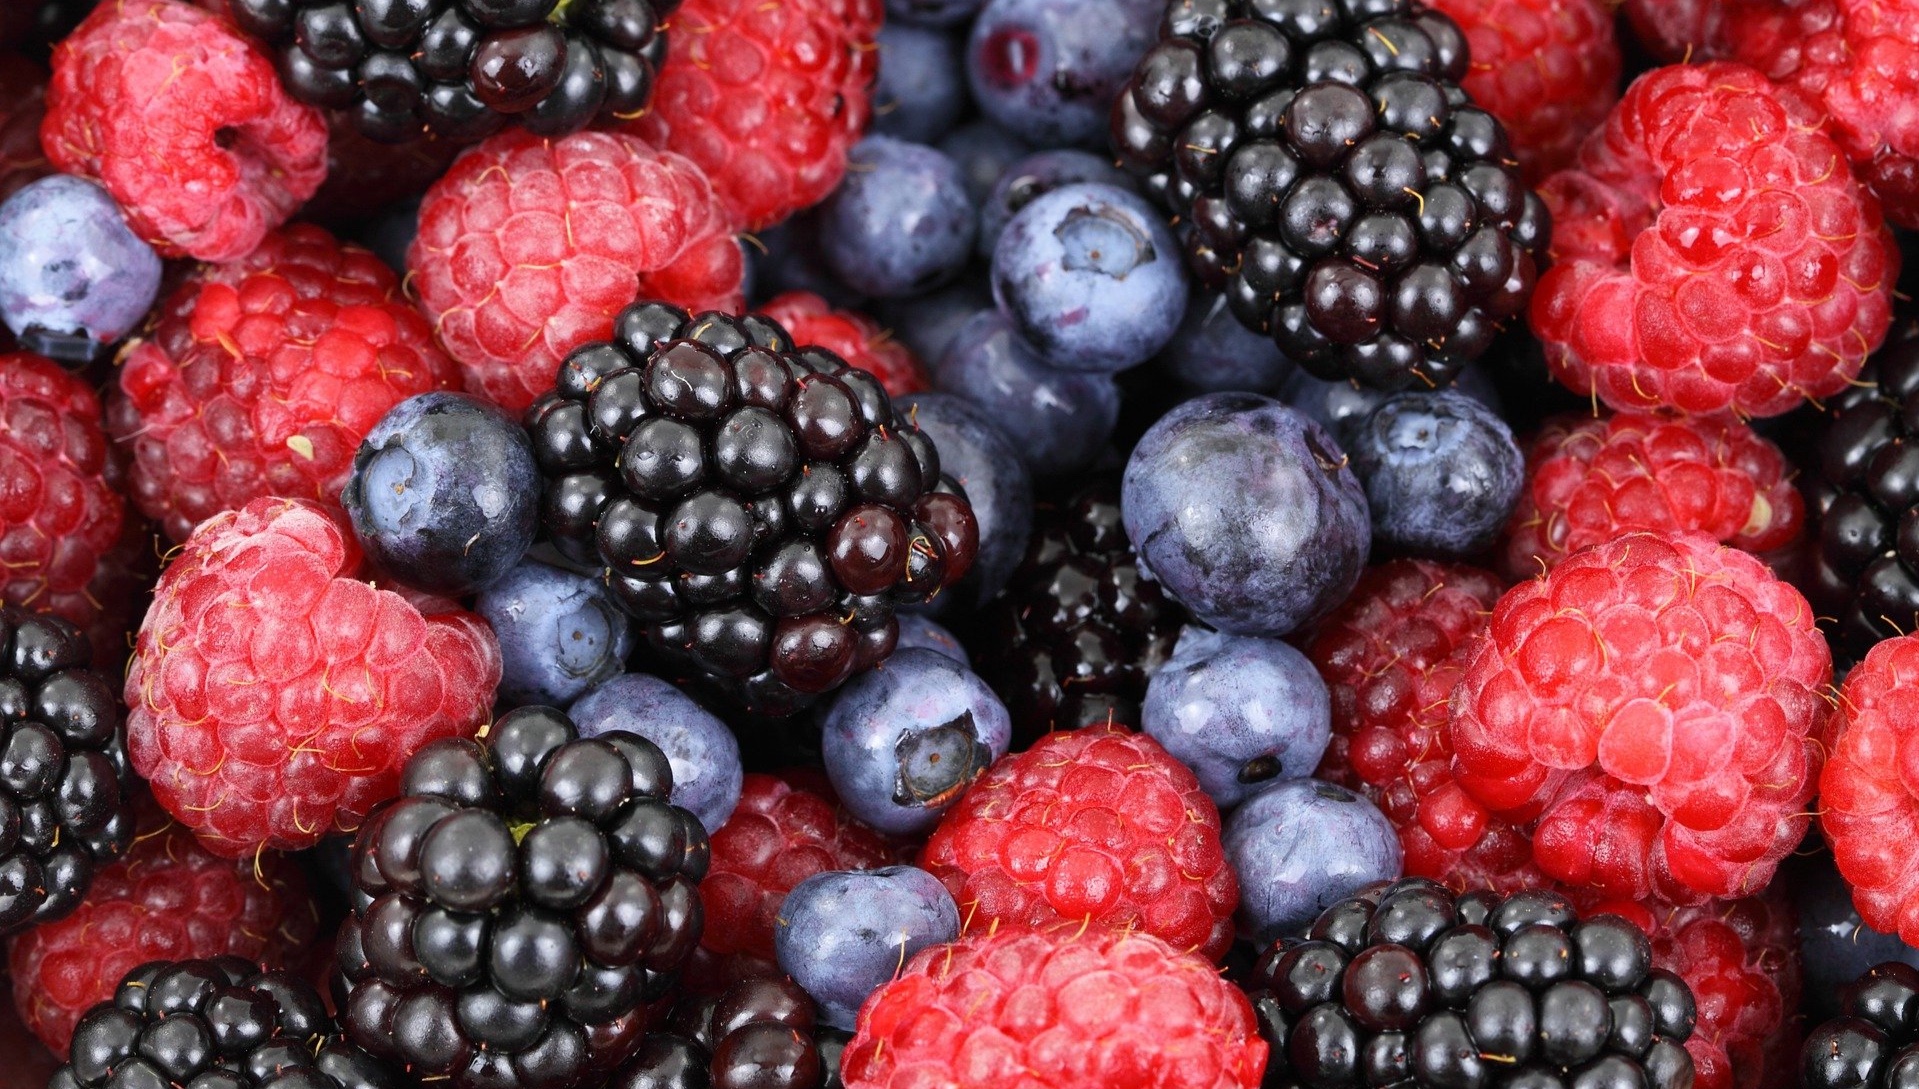 Berries and immunity